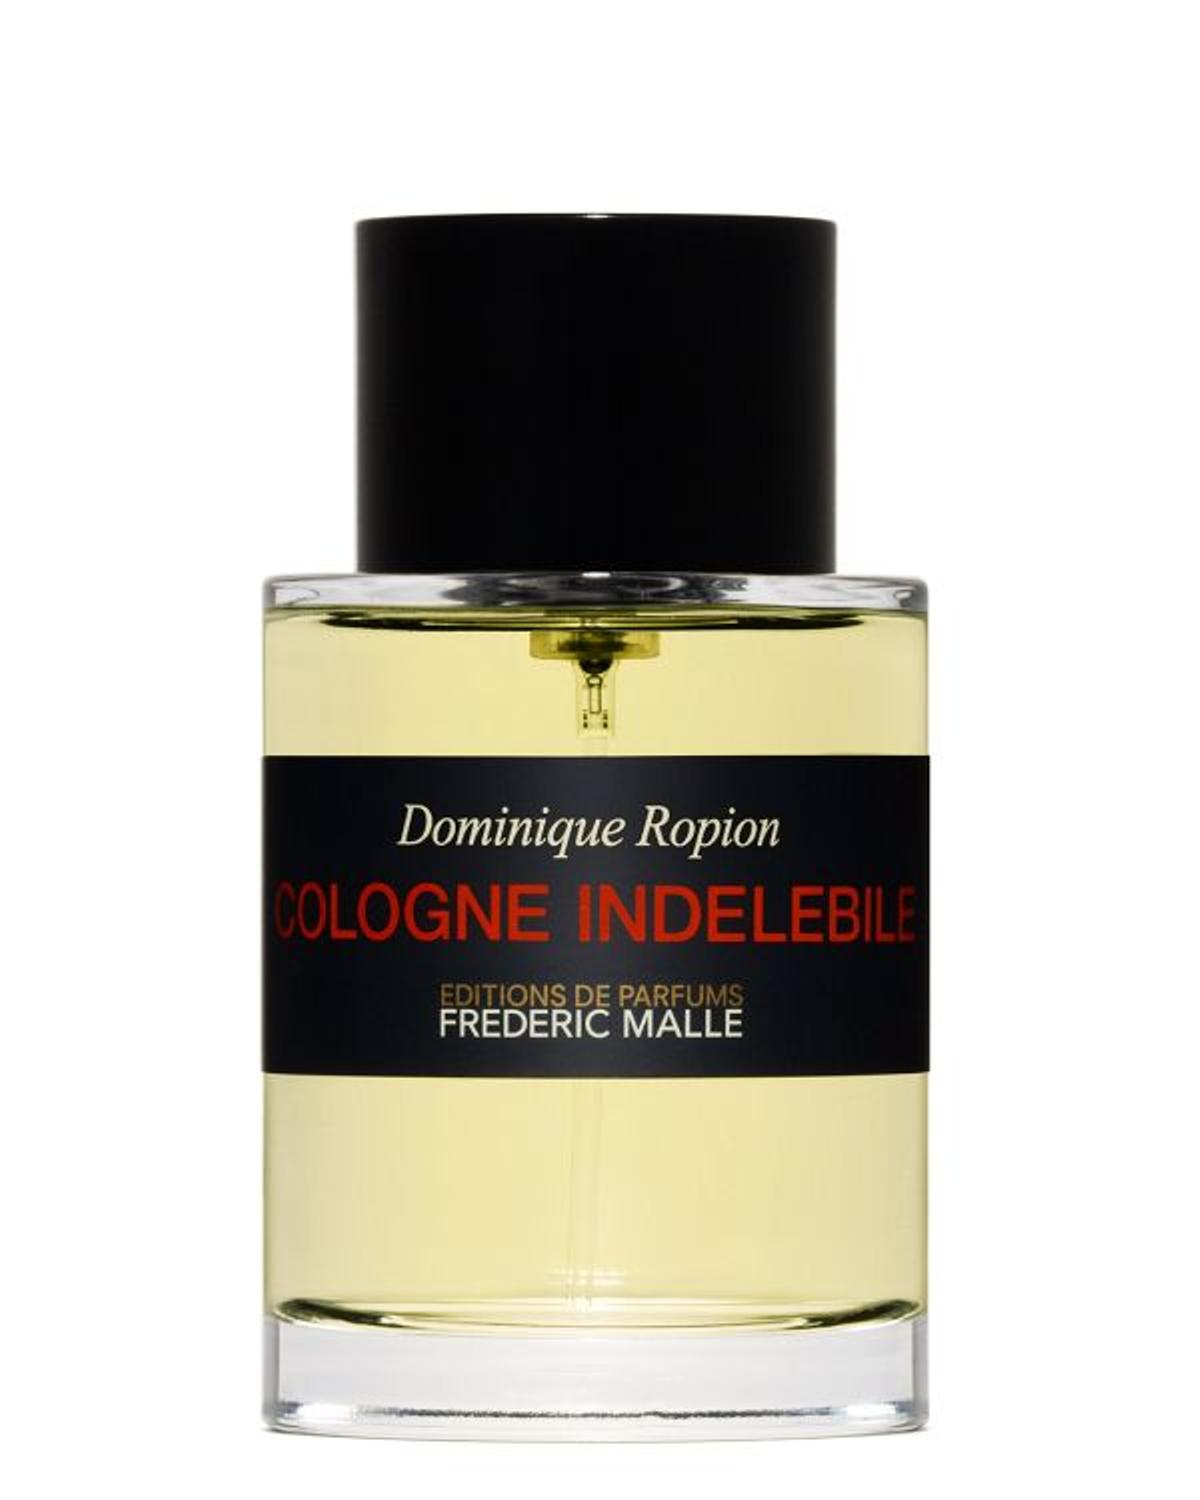 Cologne Indélébile by Dominique Ropion, de Frederic Malle Editions de Parfums